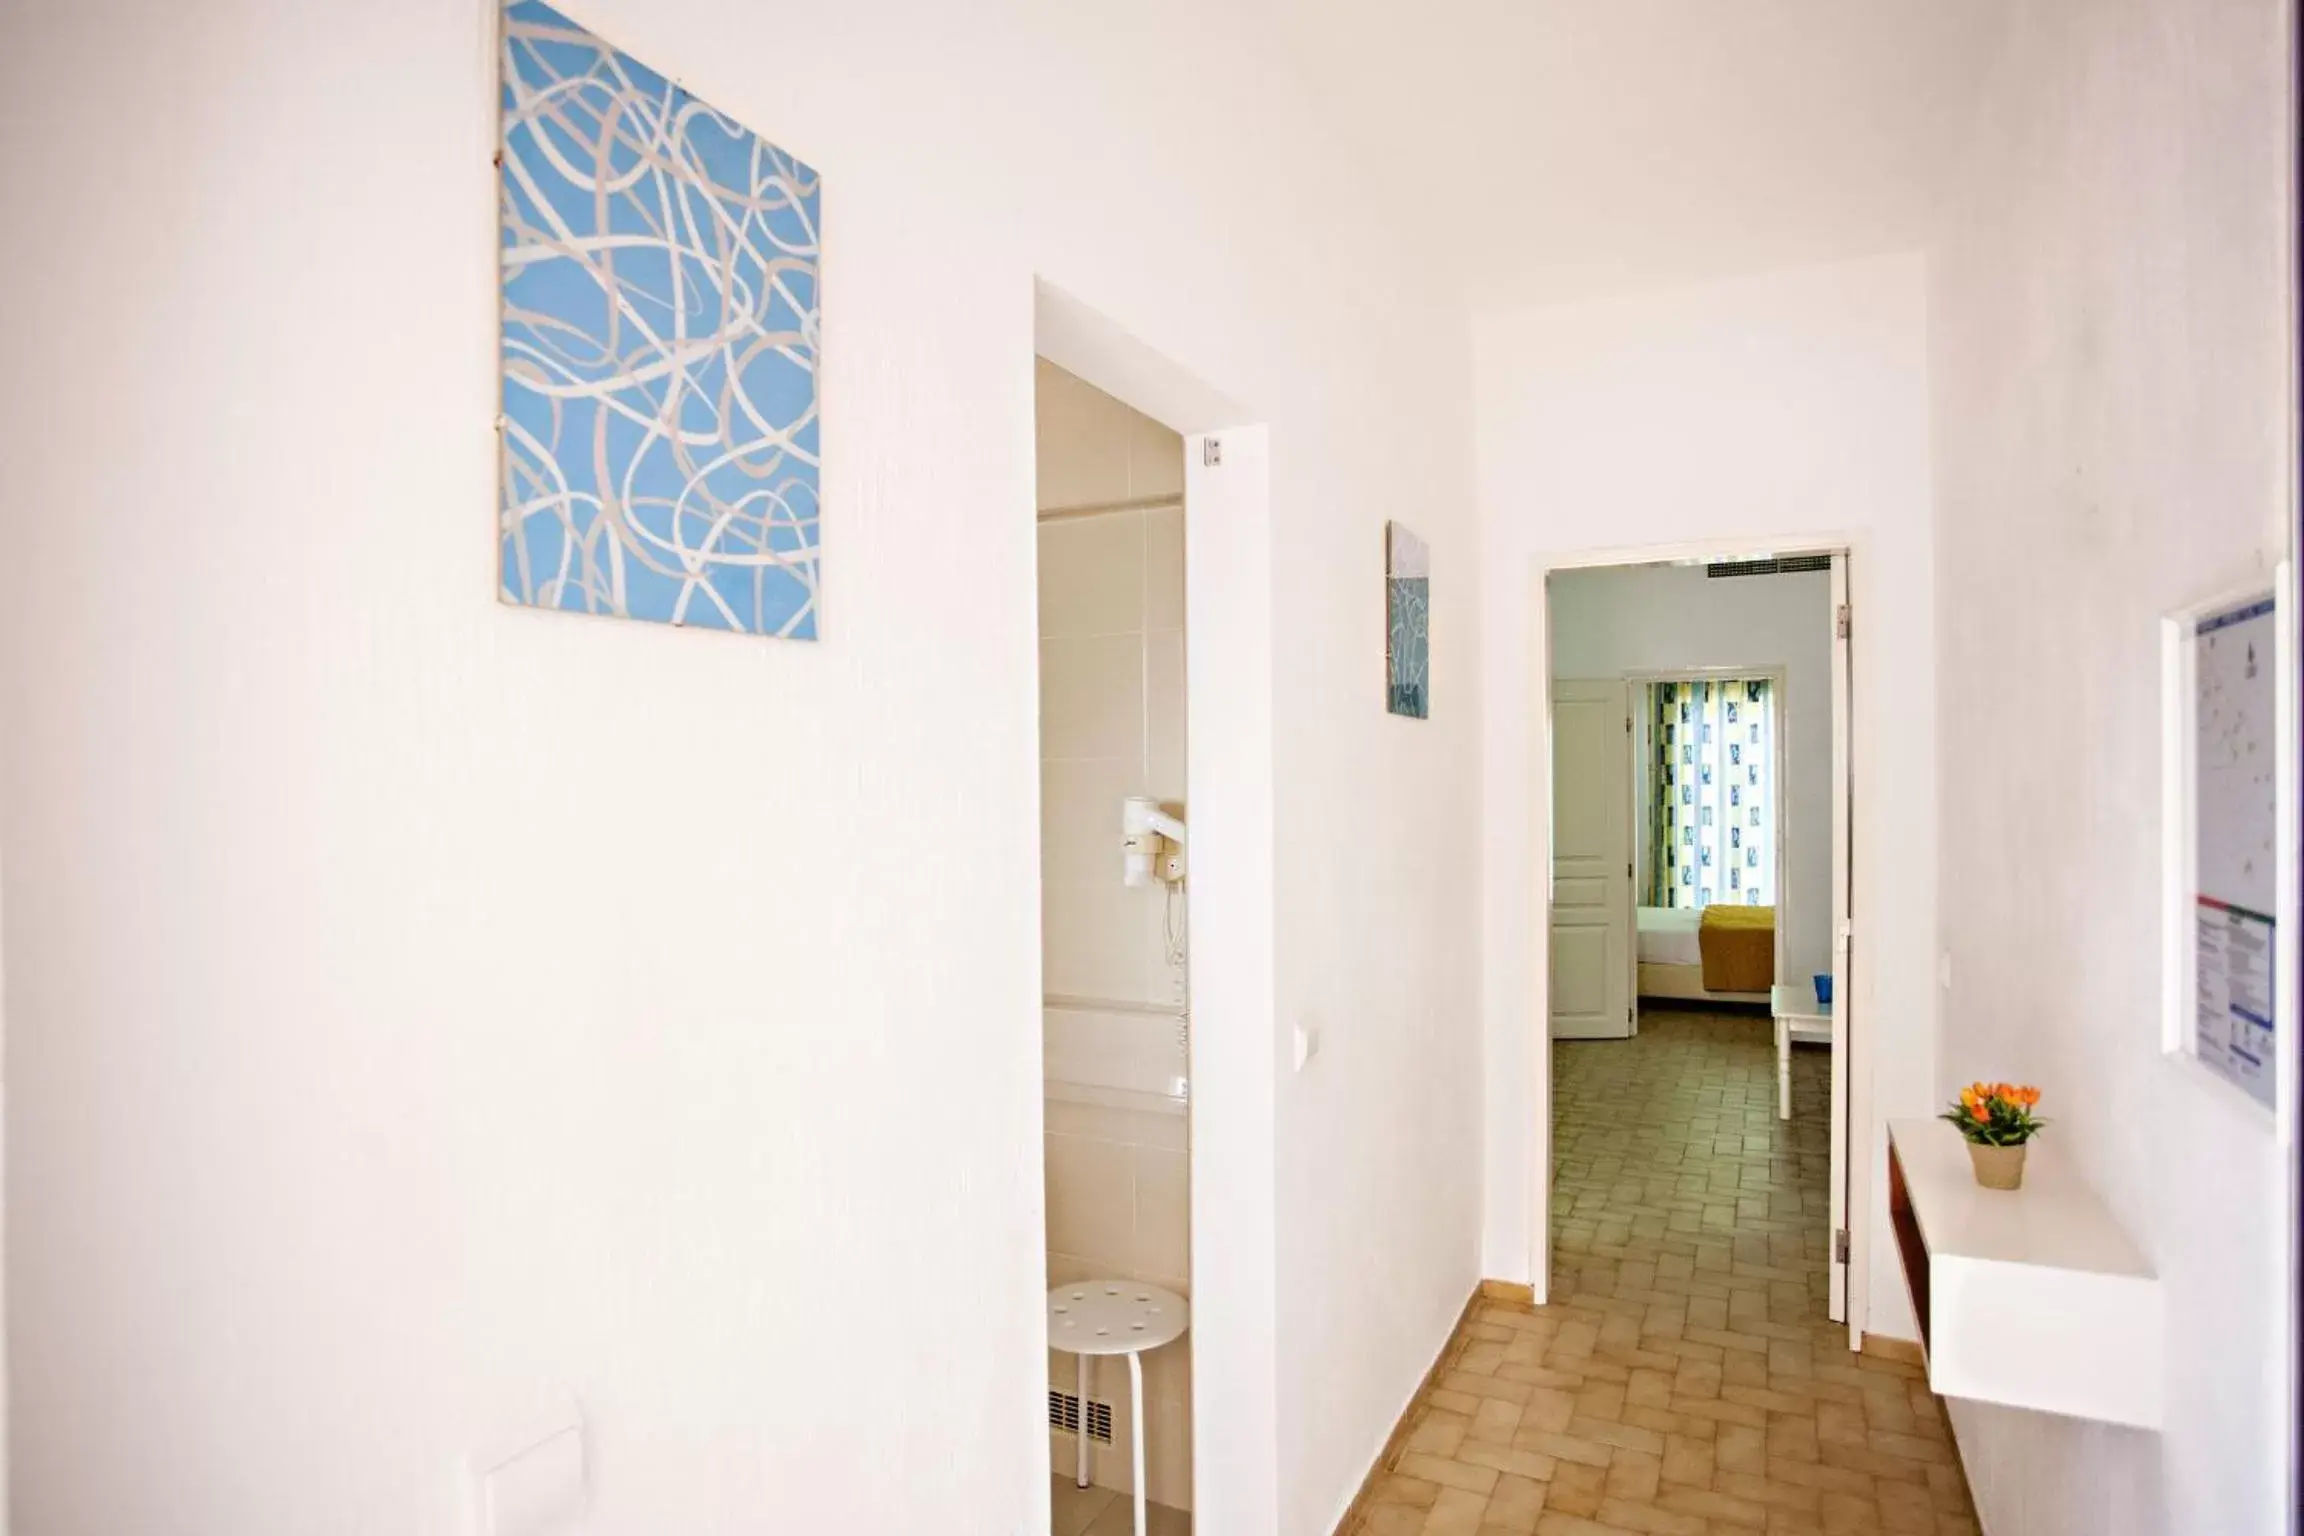 Area and facilities, Lobby/Reception in Apartamentos Turísticos Gida by Umbral